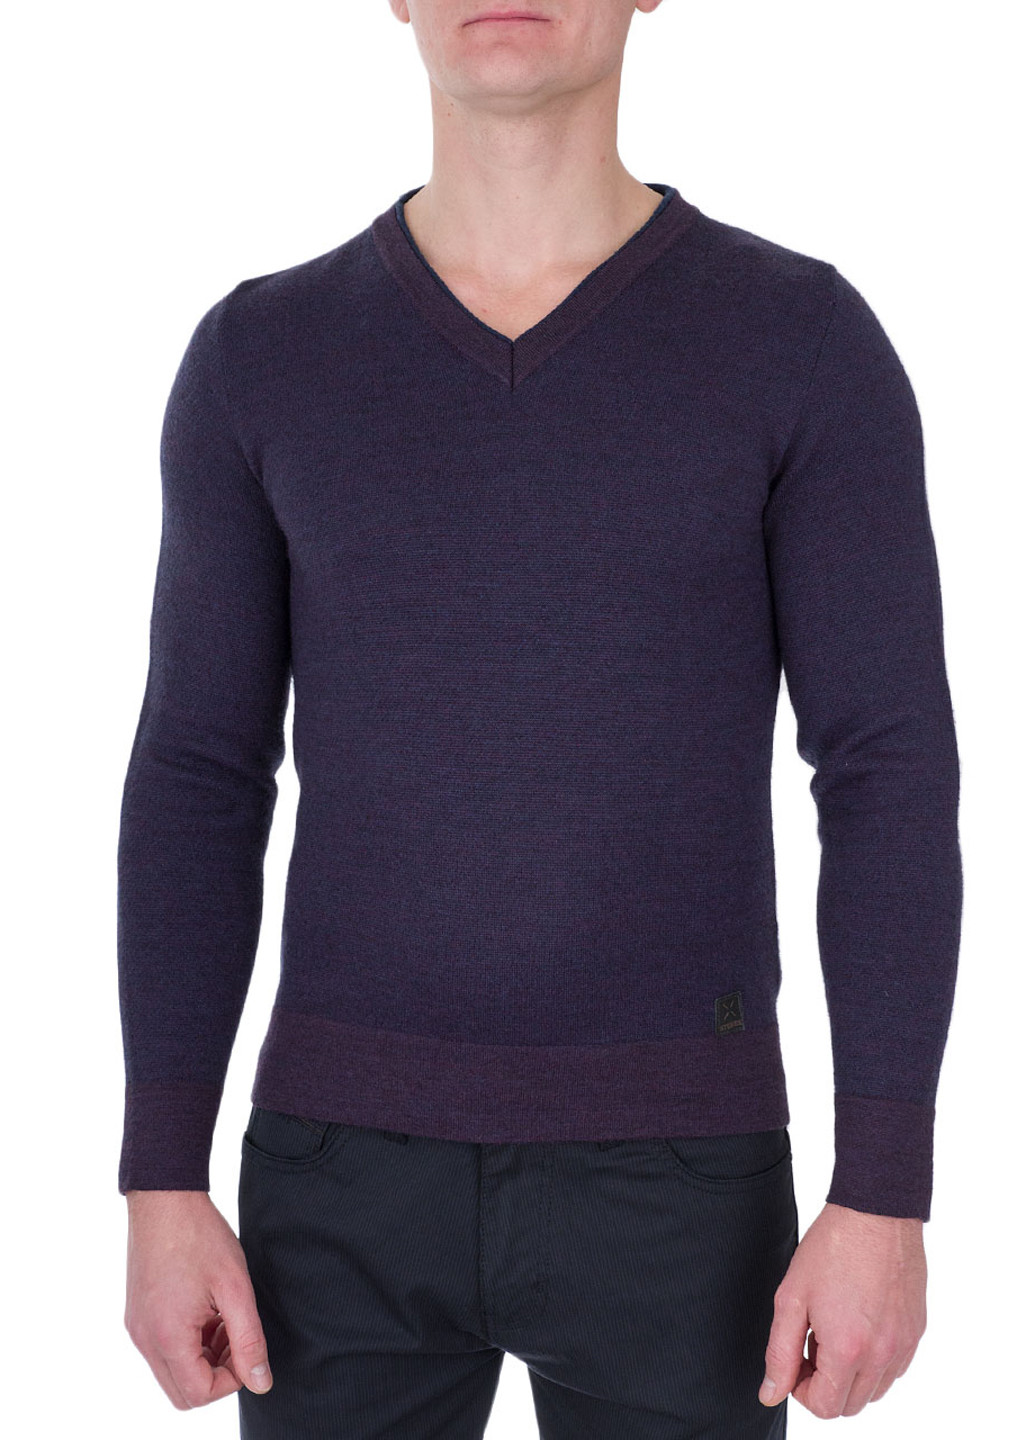 Фиолетовый демисезонный пуловер пуловер Stones